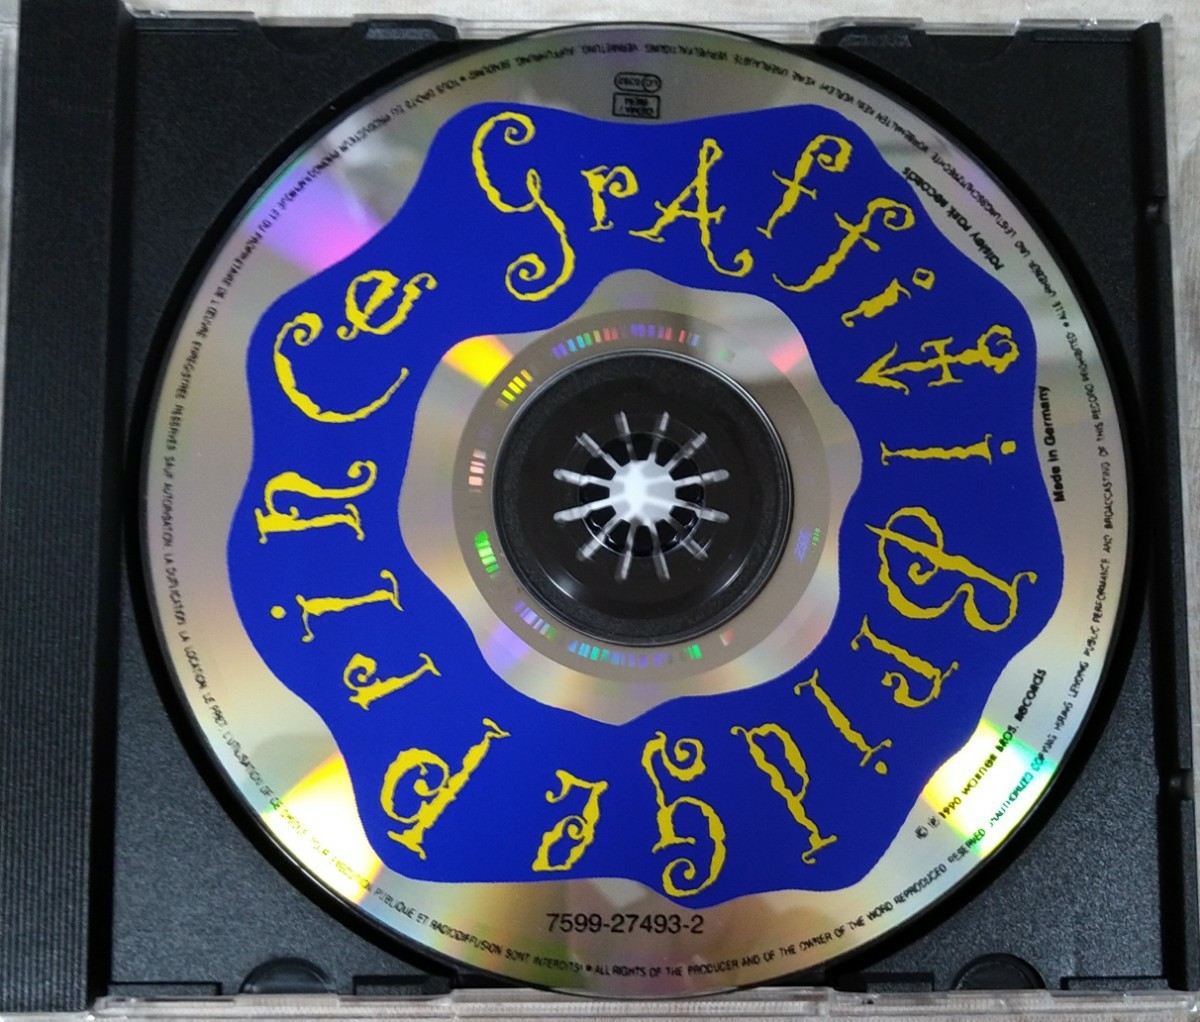 Prince music from Graffiti Bridge 旧規格輸入盤中古CD プリンス グラフィティ・ブリッジ 7599-27493-2_画像3